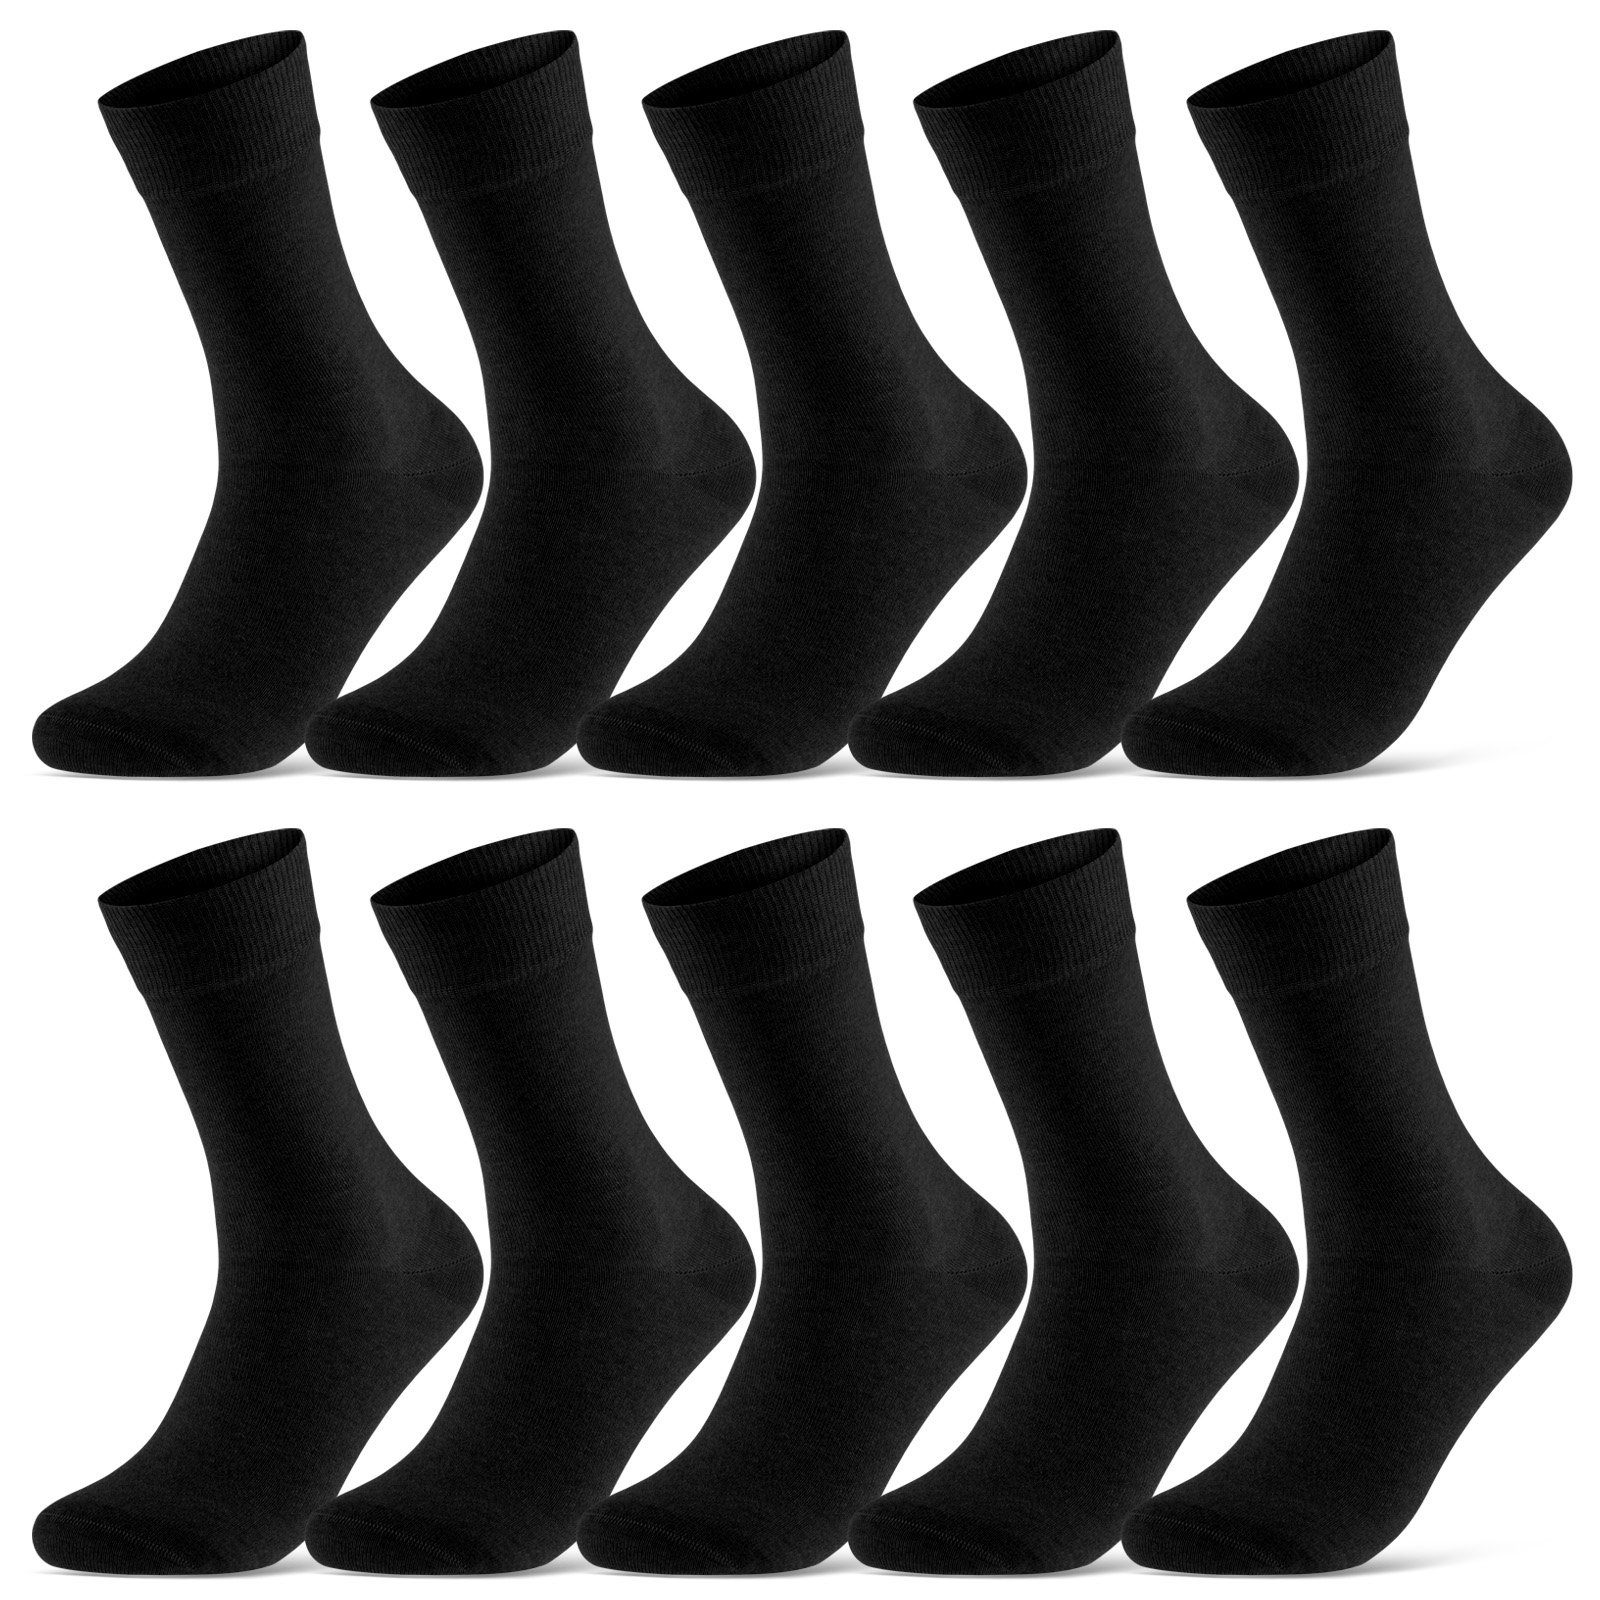 sockenkauf24 Socken 10 Paar Damen & Herren Socken Business Socken Baumwolle (Schwarz, 47-50) mit Komfortbund (Basicline) - 70201T